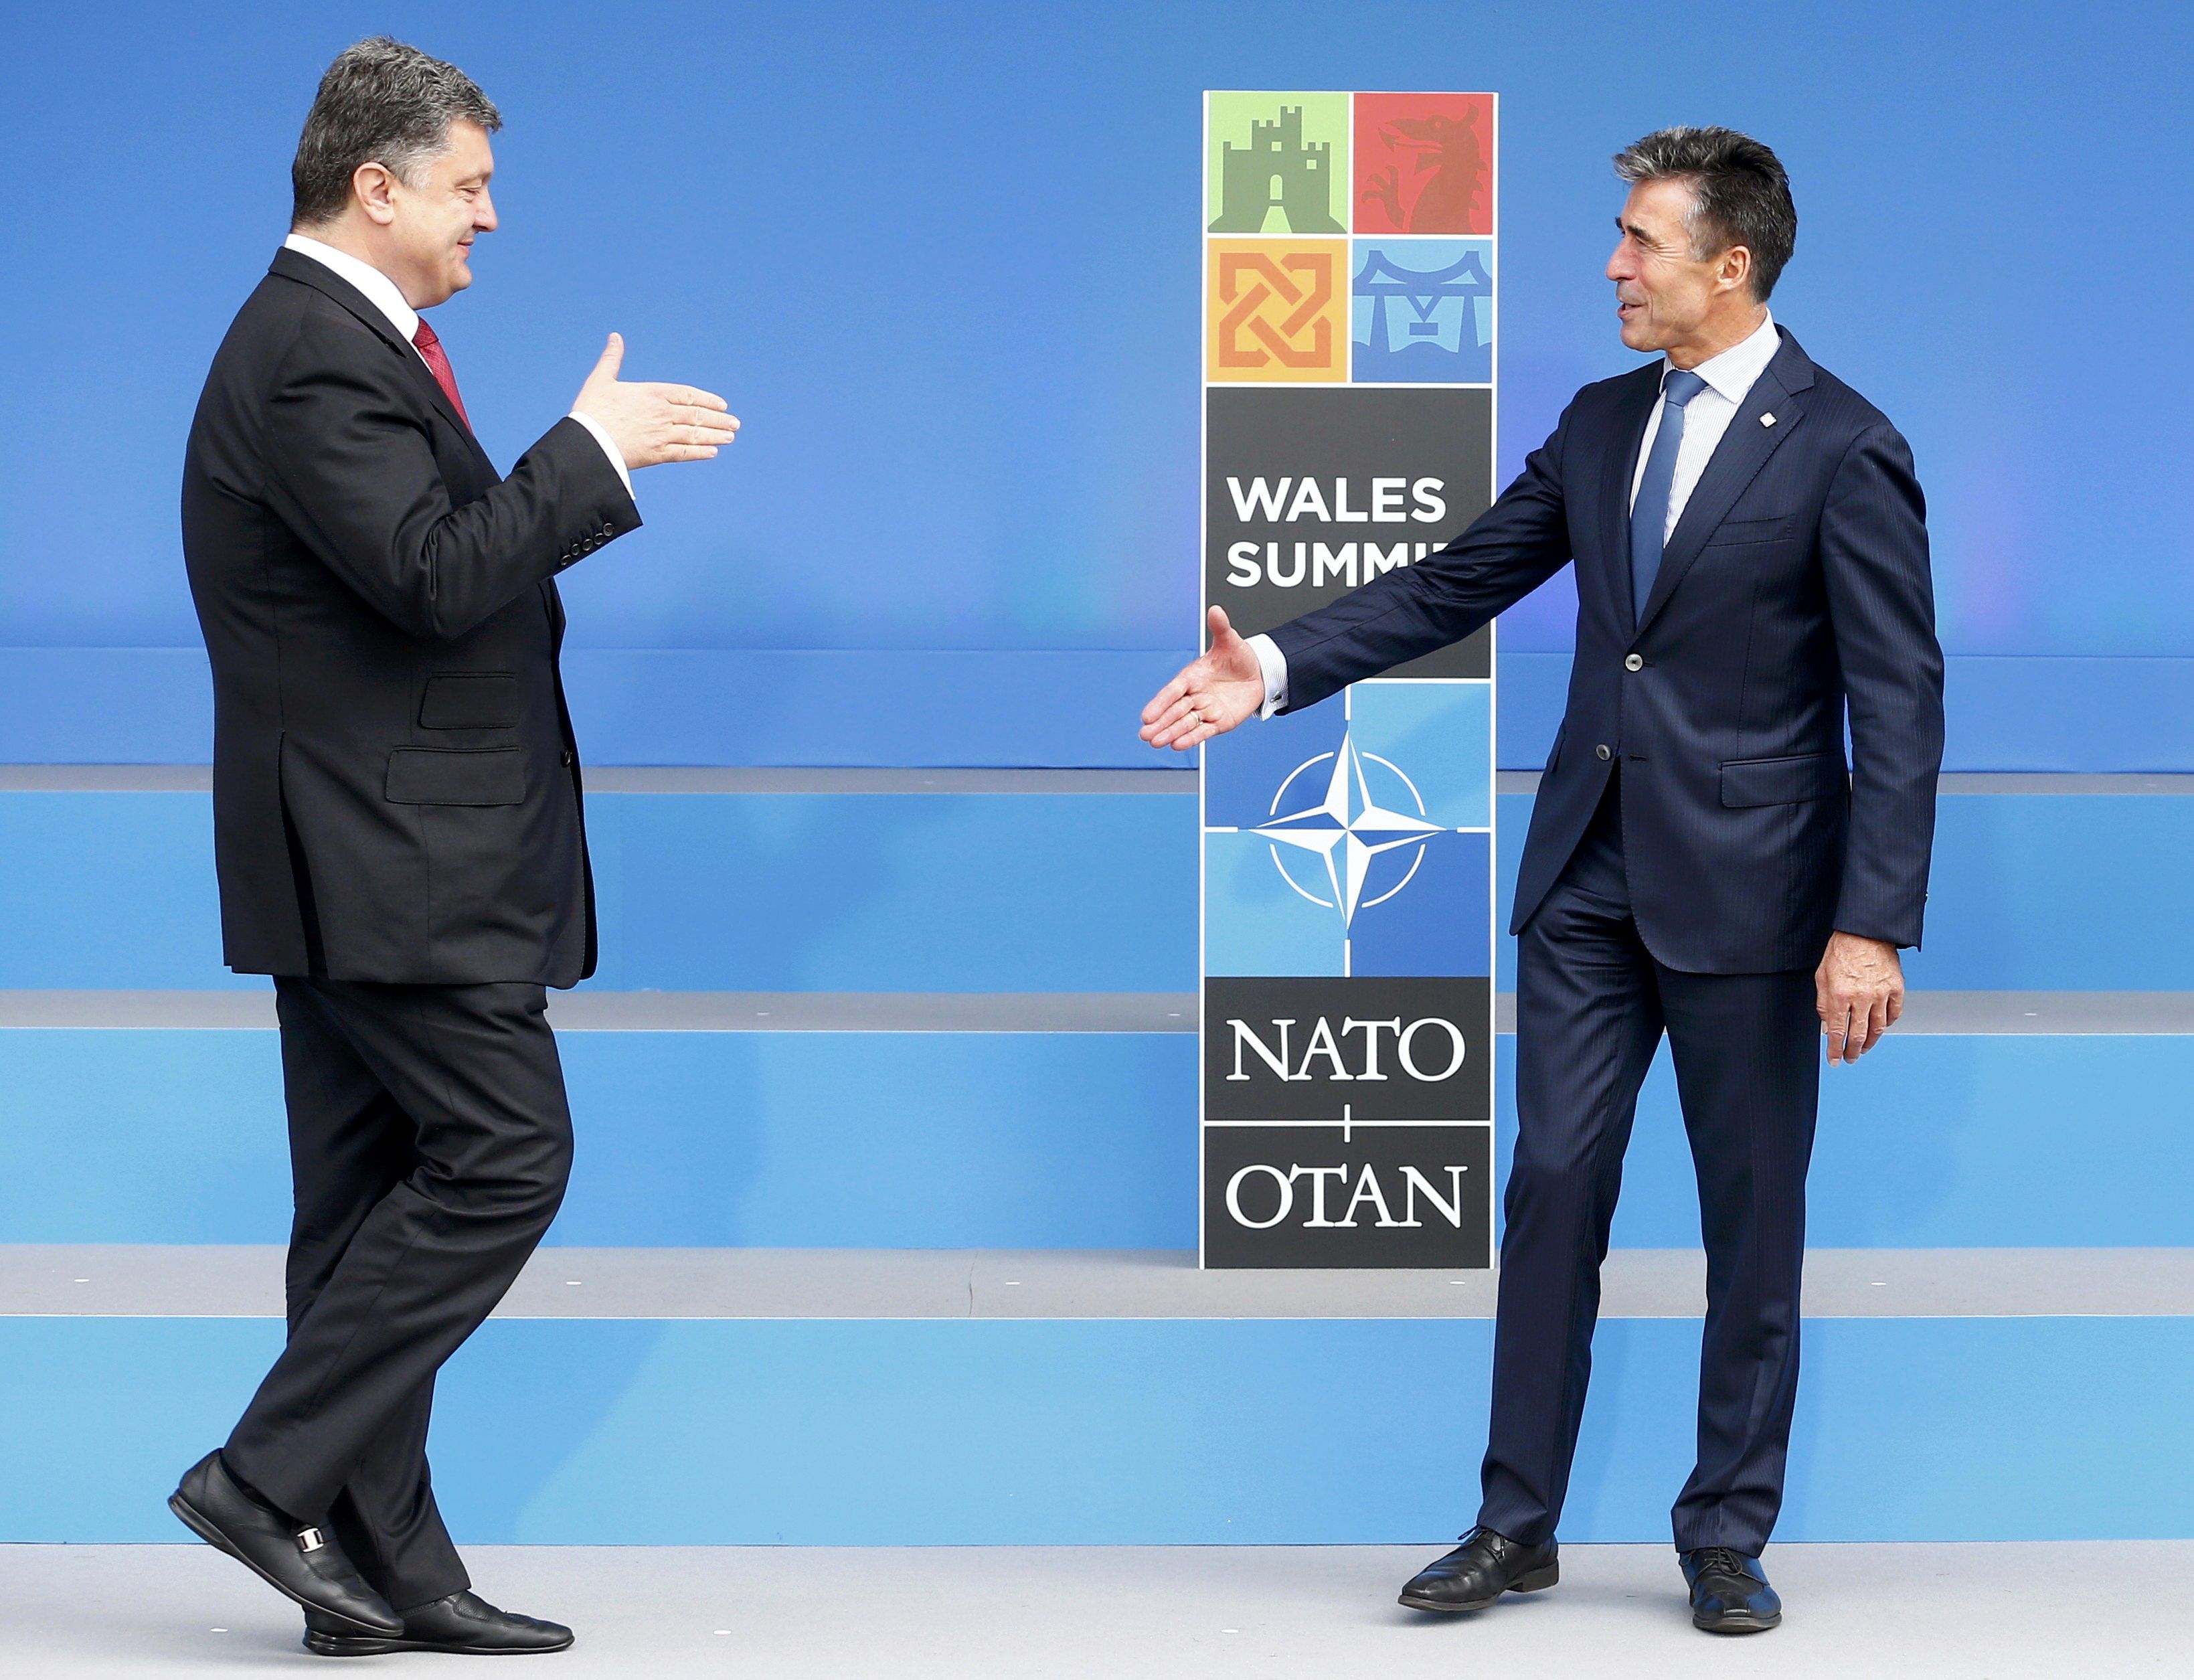 К варшавскому саммиту НАТО. Что хочет и что получит Украина